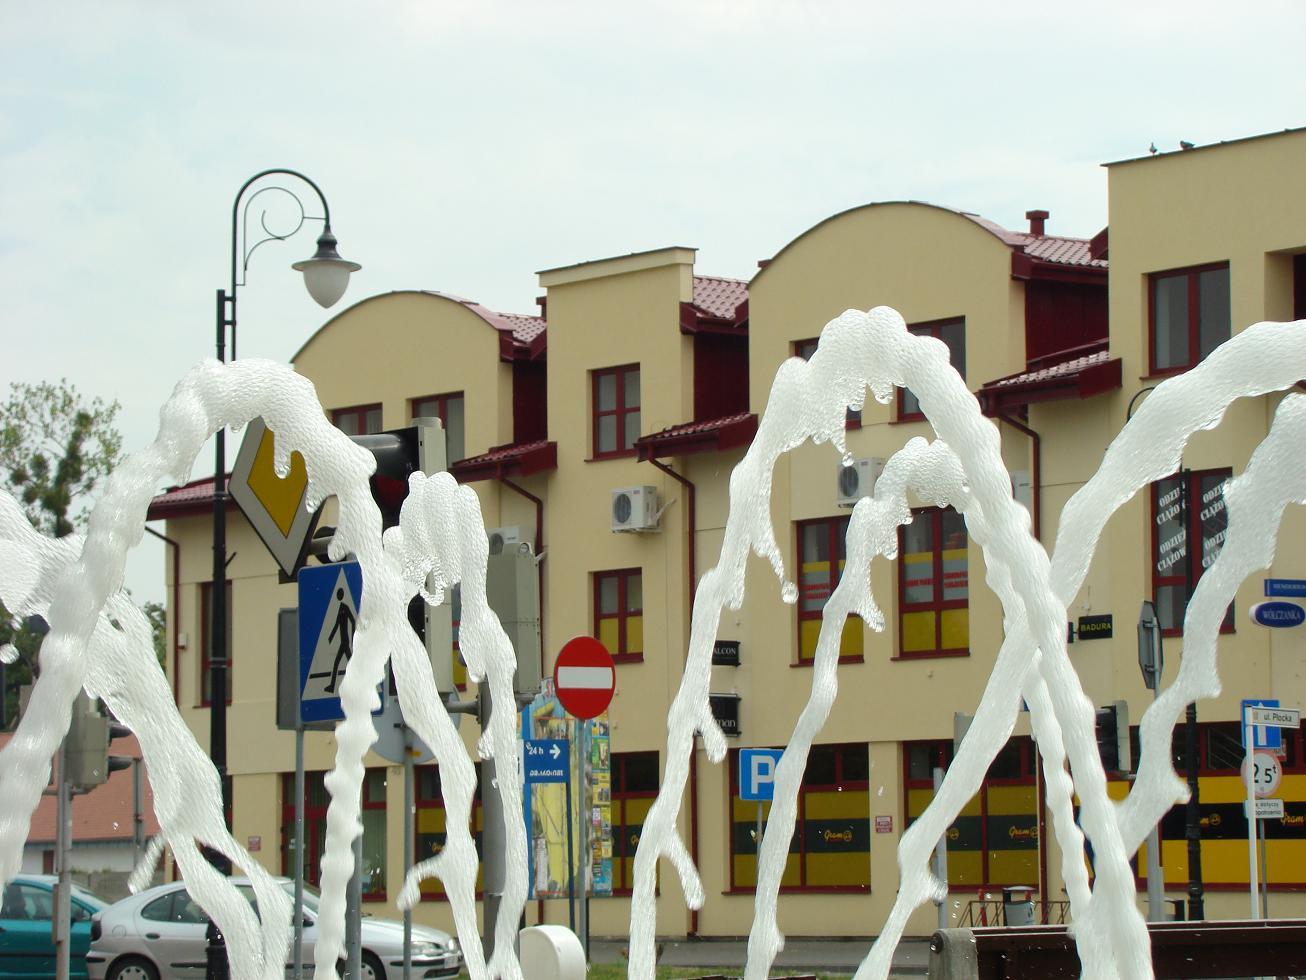 Sklep na ulicy Pockiej przez pryzmat sierpeckiej fontanny, wrzesie 2008 r.